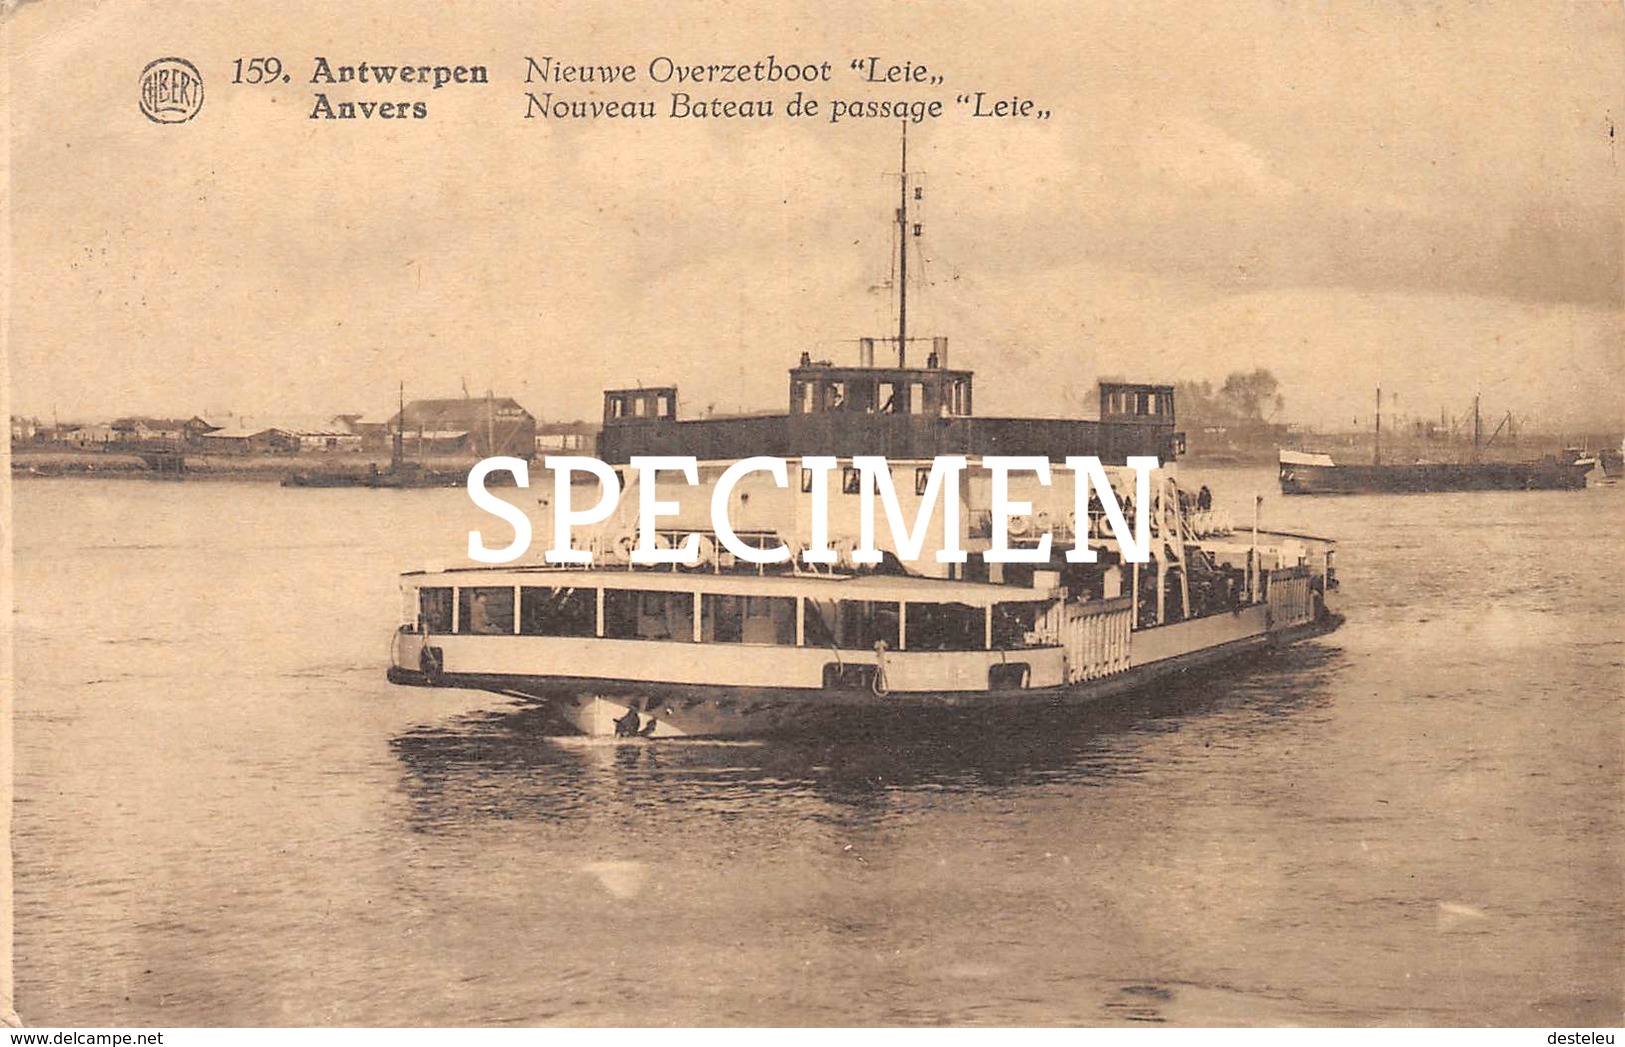 159 Nieuwe Overzetboot Leie - Anvers - Antwerpen - Aartselaar